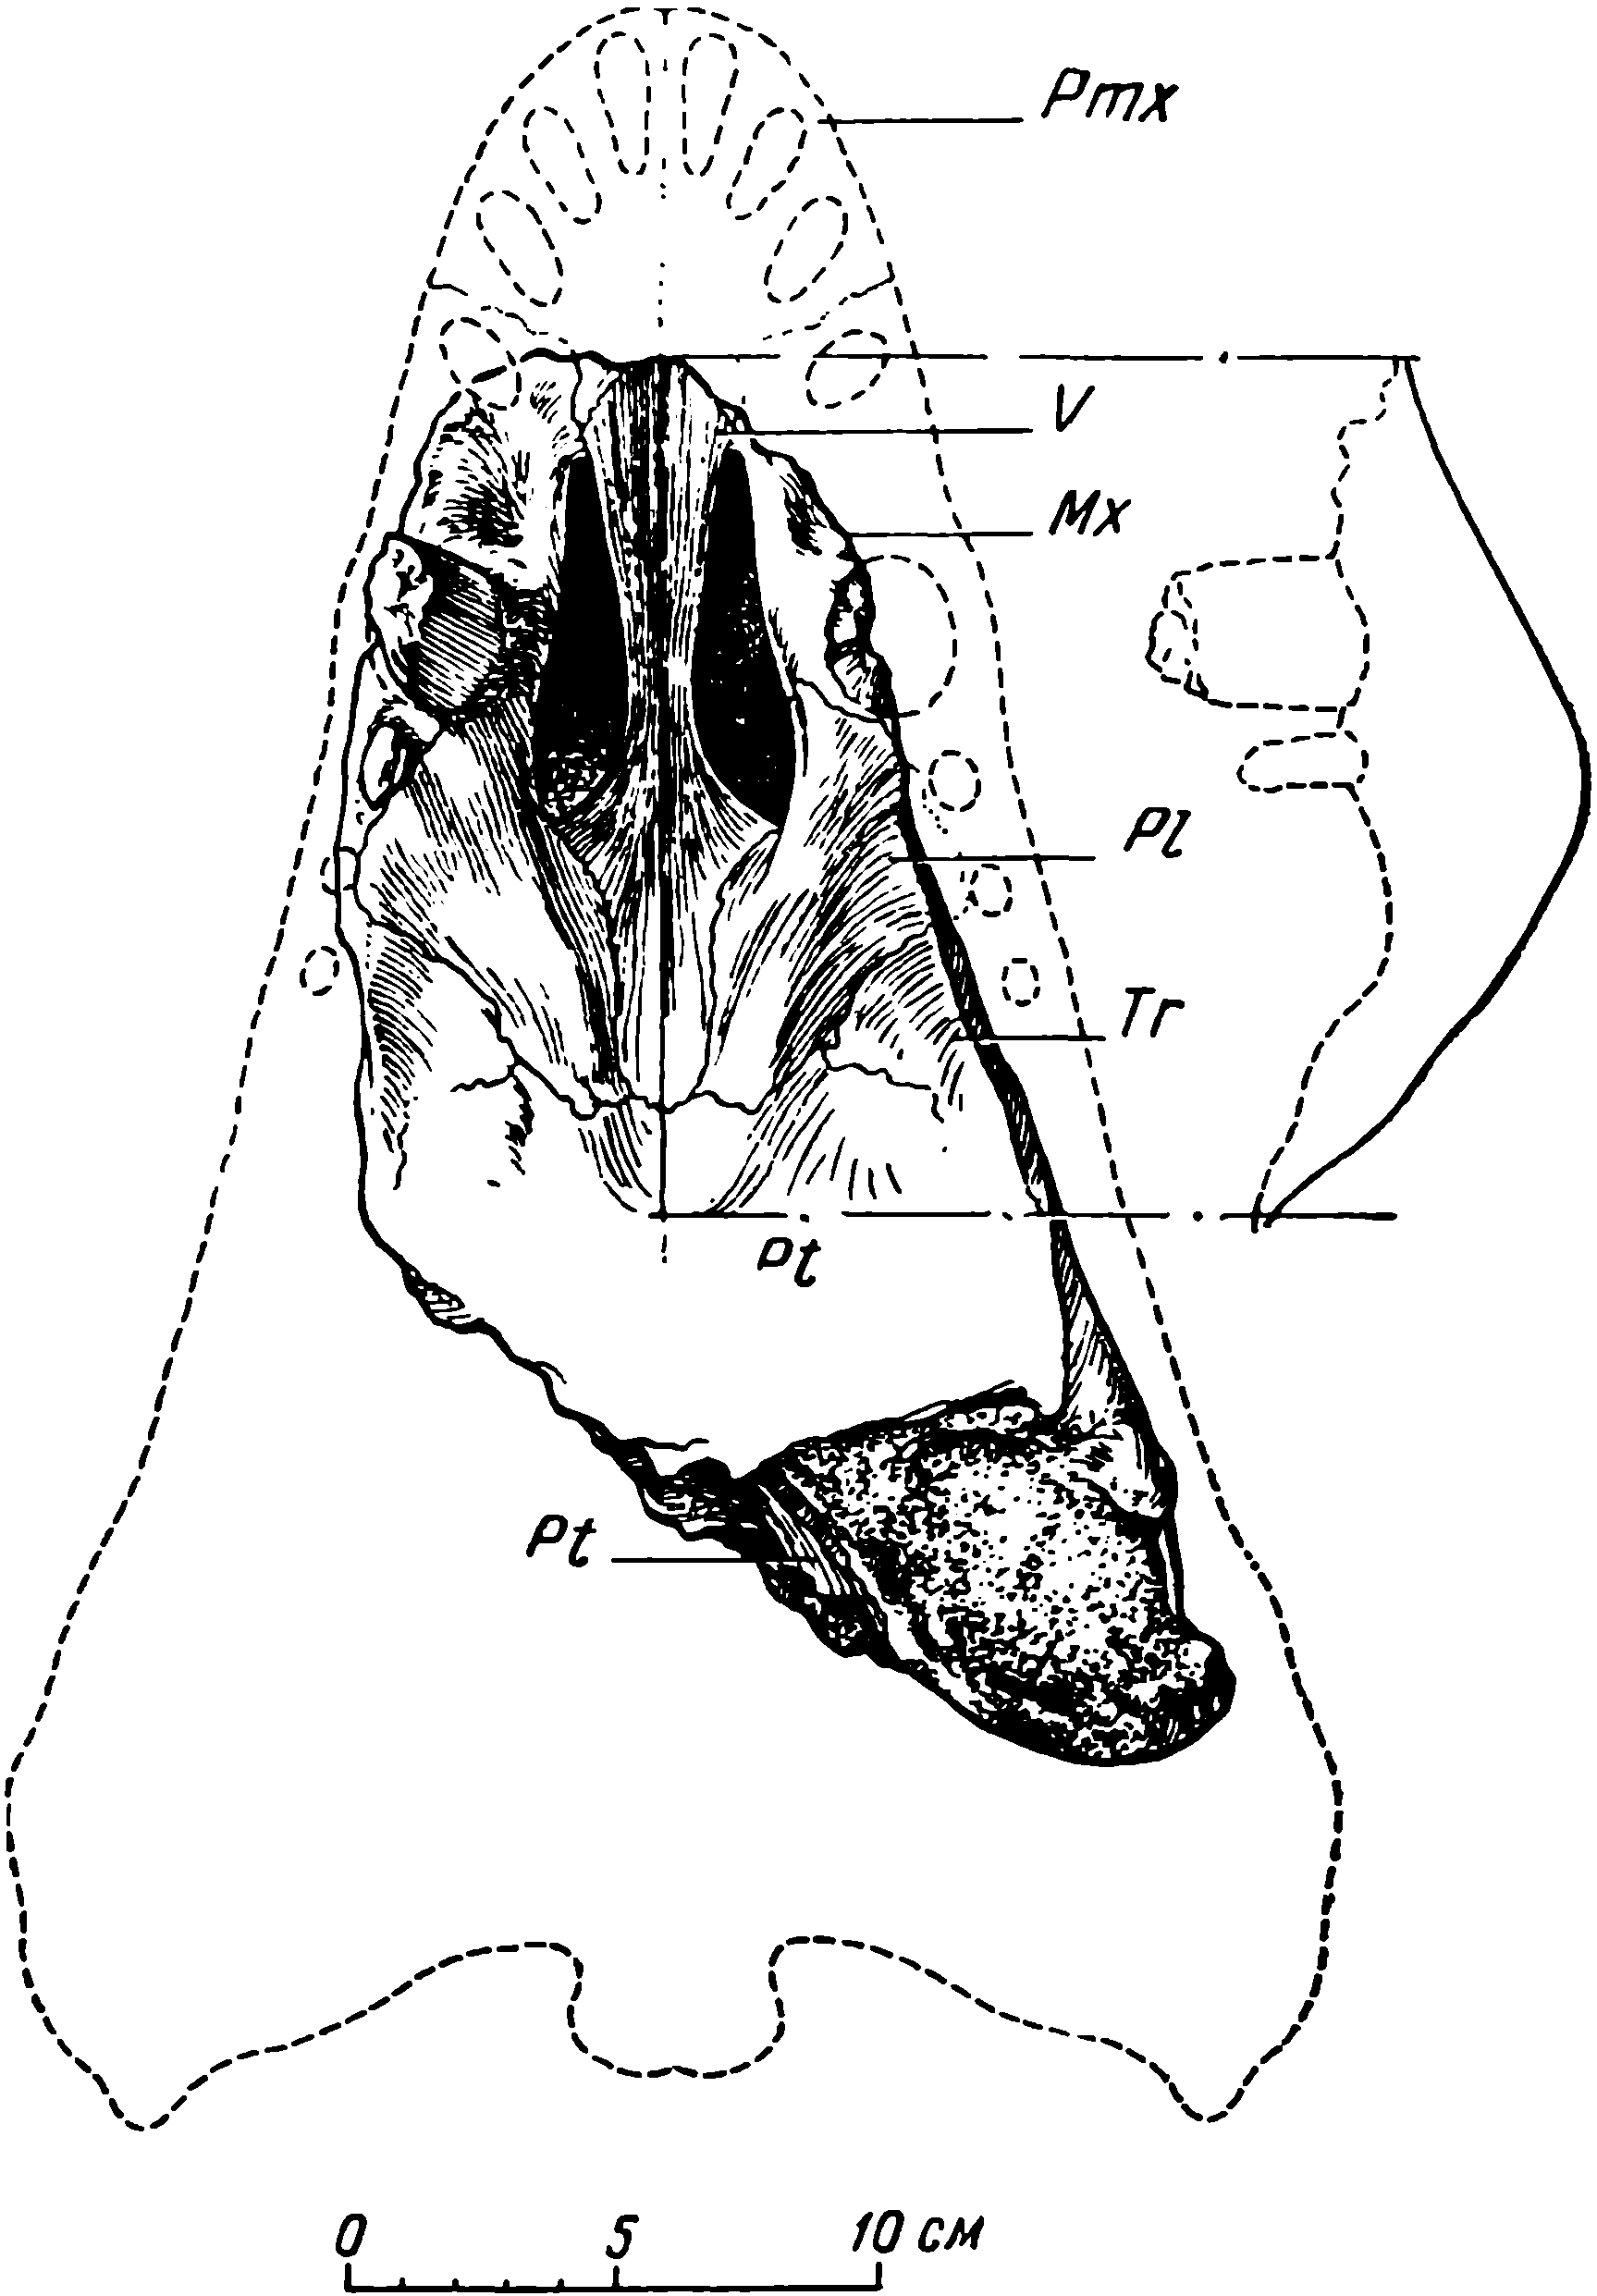 Рис. 7. Deuterosaurus biarmicus Eichw. Череп ЛГМ/ЧМП № 2, вентральная поверхность. С правой стороны вычерчен профиль углубленной хоанной области нёба. Обозначения см. рис. 3, 6; кроме того: V — vomer; Pl — palatinum; Tr — transversum